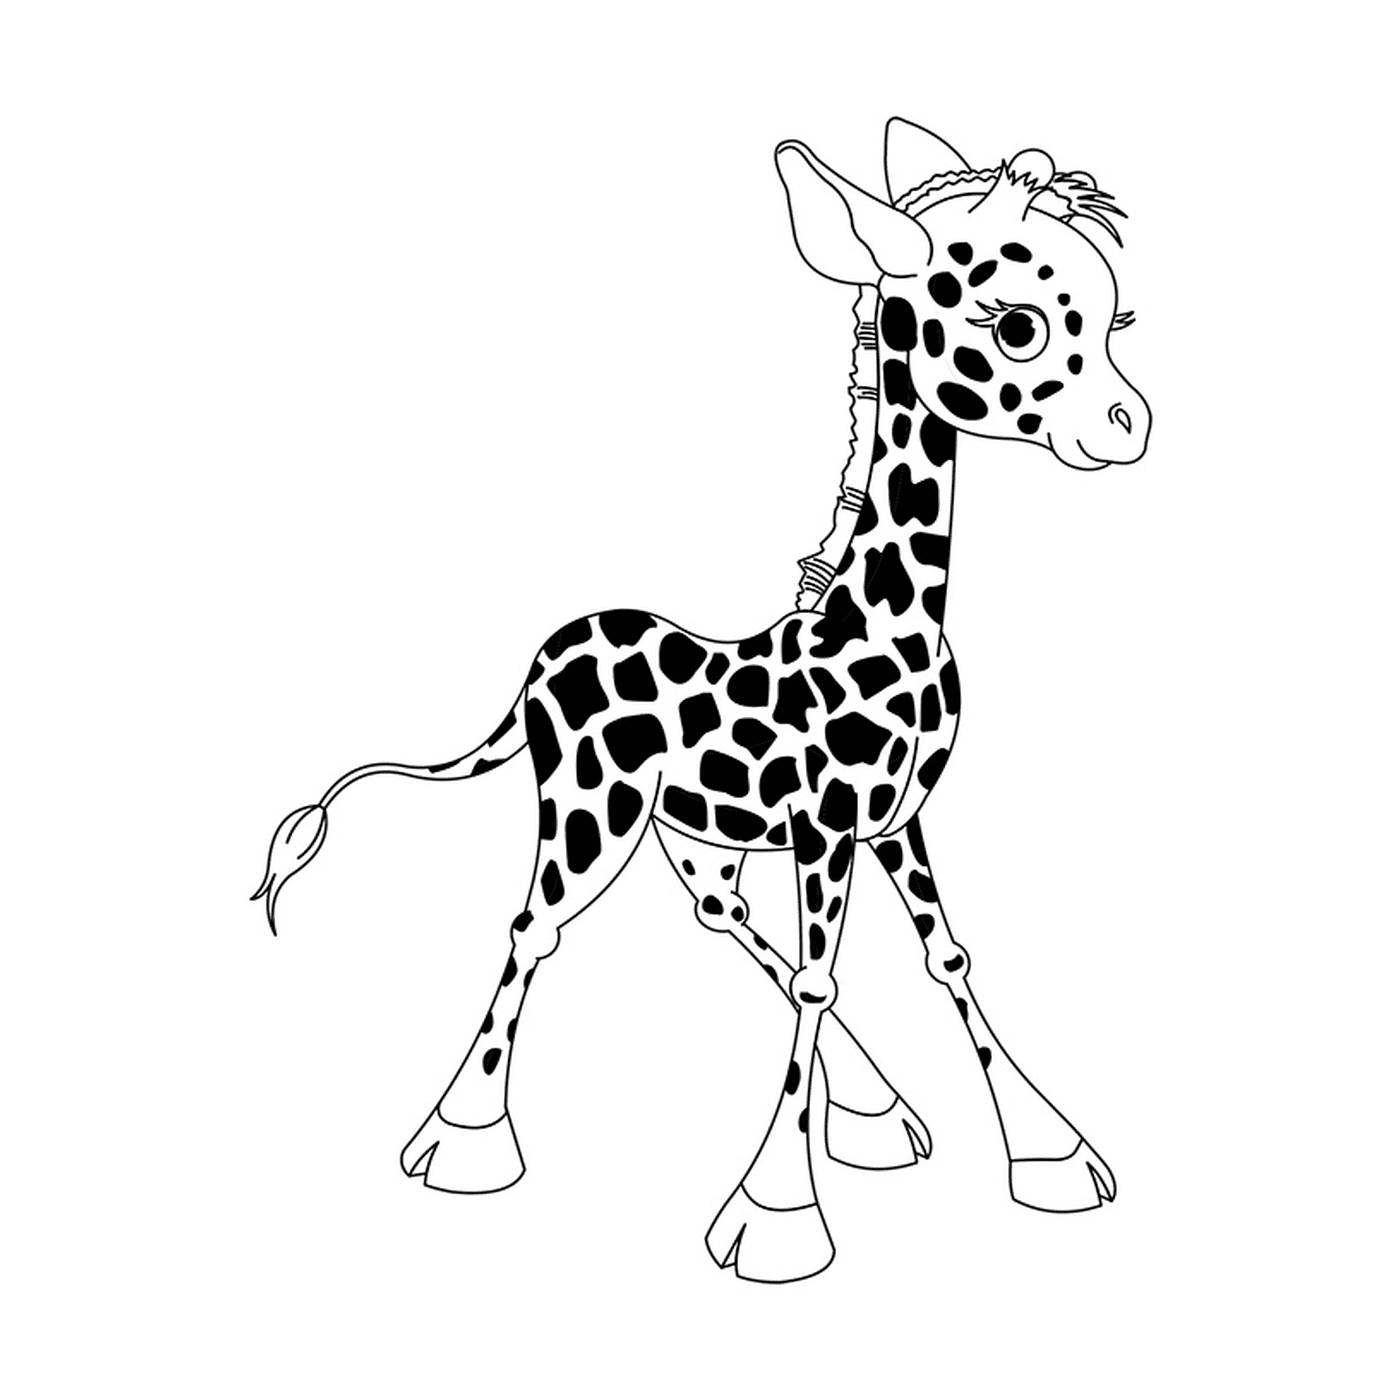  Una jirafa bebé 